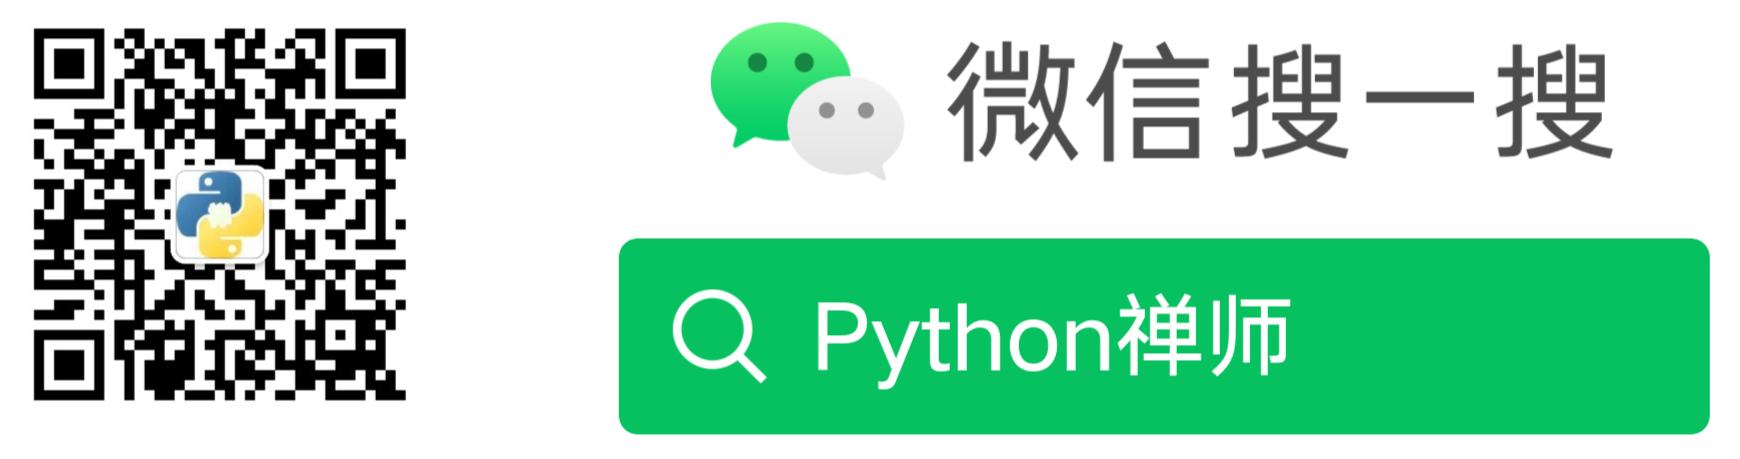 微信公众号：Python禅师